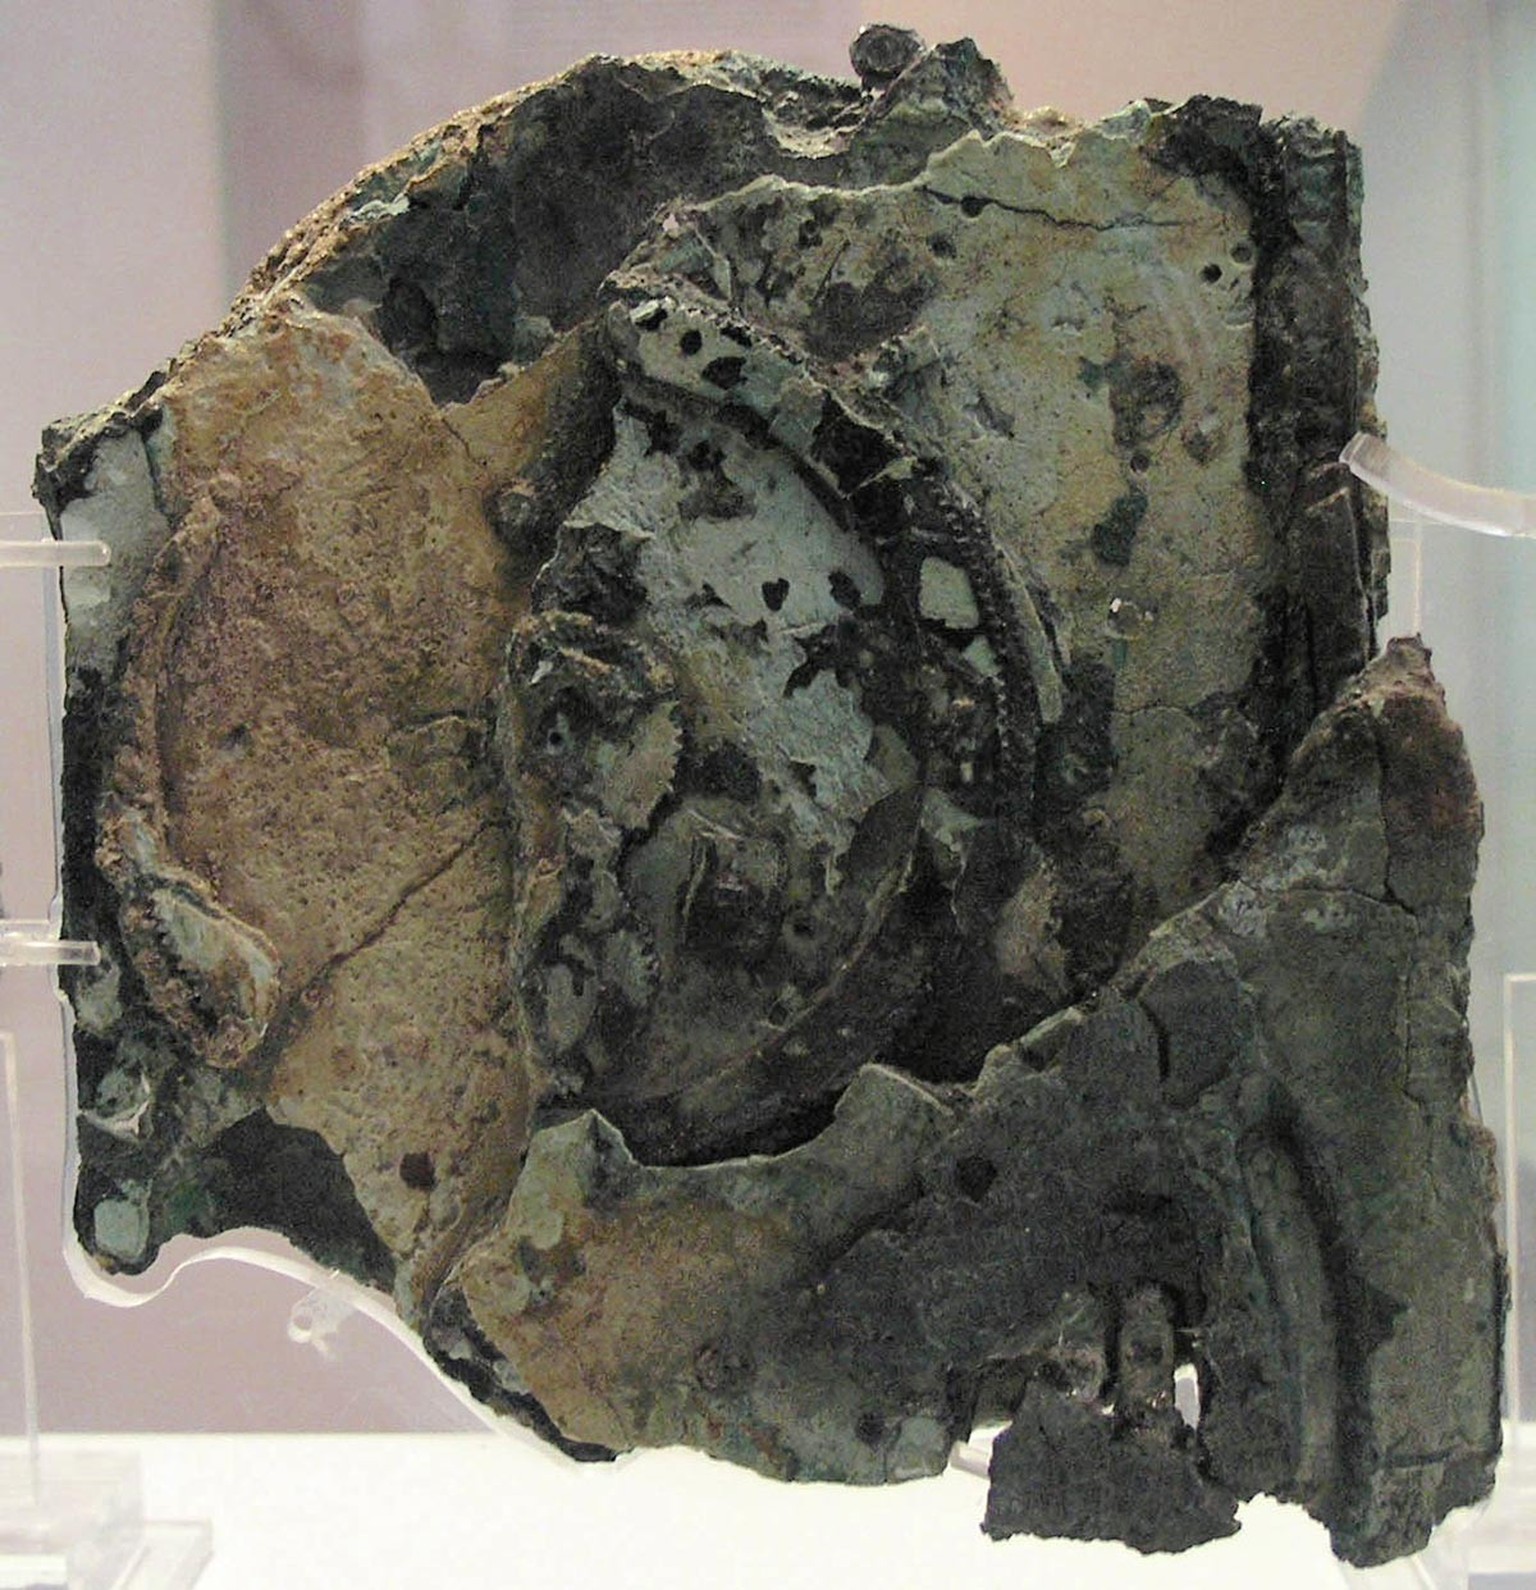 Der antike Mechanismus von Antikythera wurde bis heute mehrfach nachgebaut, einmal davon in der Schweiz.
https://de.wikipedia.org/wiki/Mechanismus_von_Antikythera#/media/Datei:Fragments_of_the_Antikyt ...